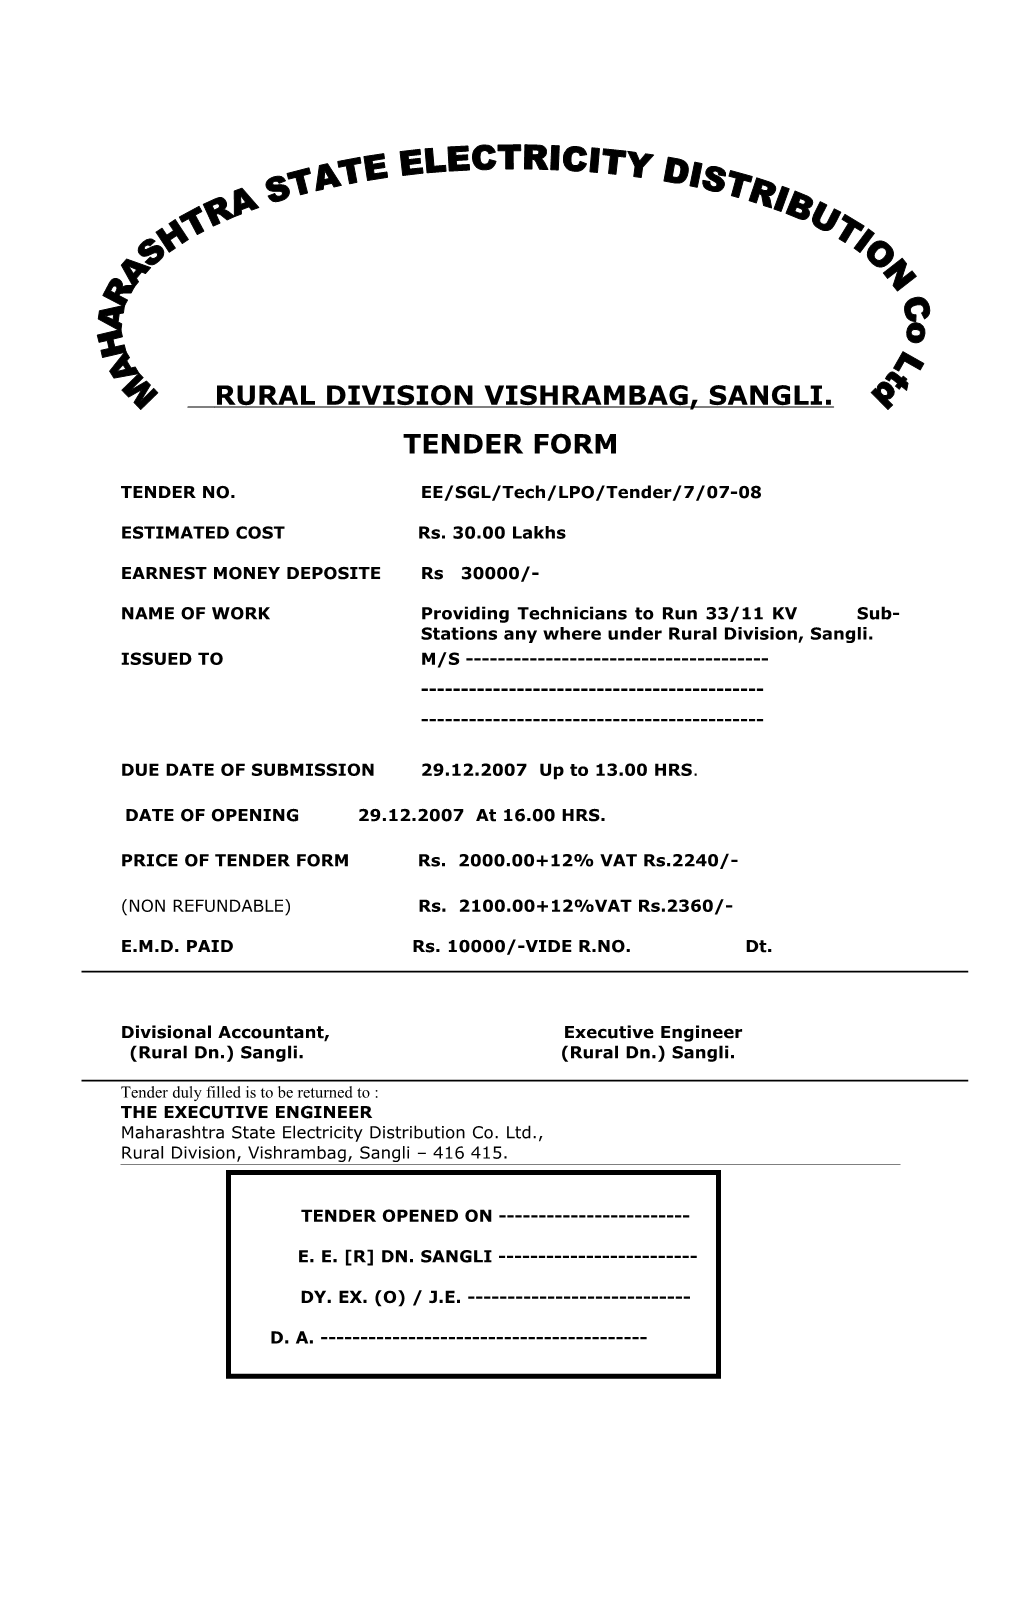 Rural Division Vishrambag, Sangli